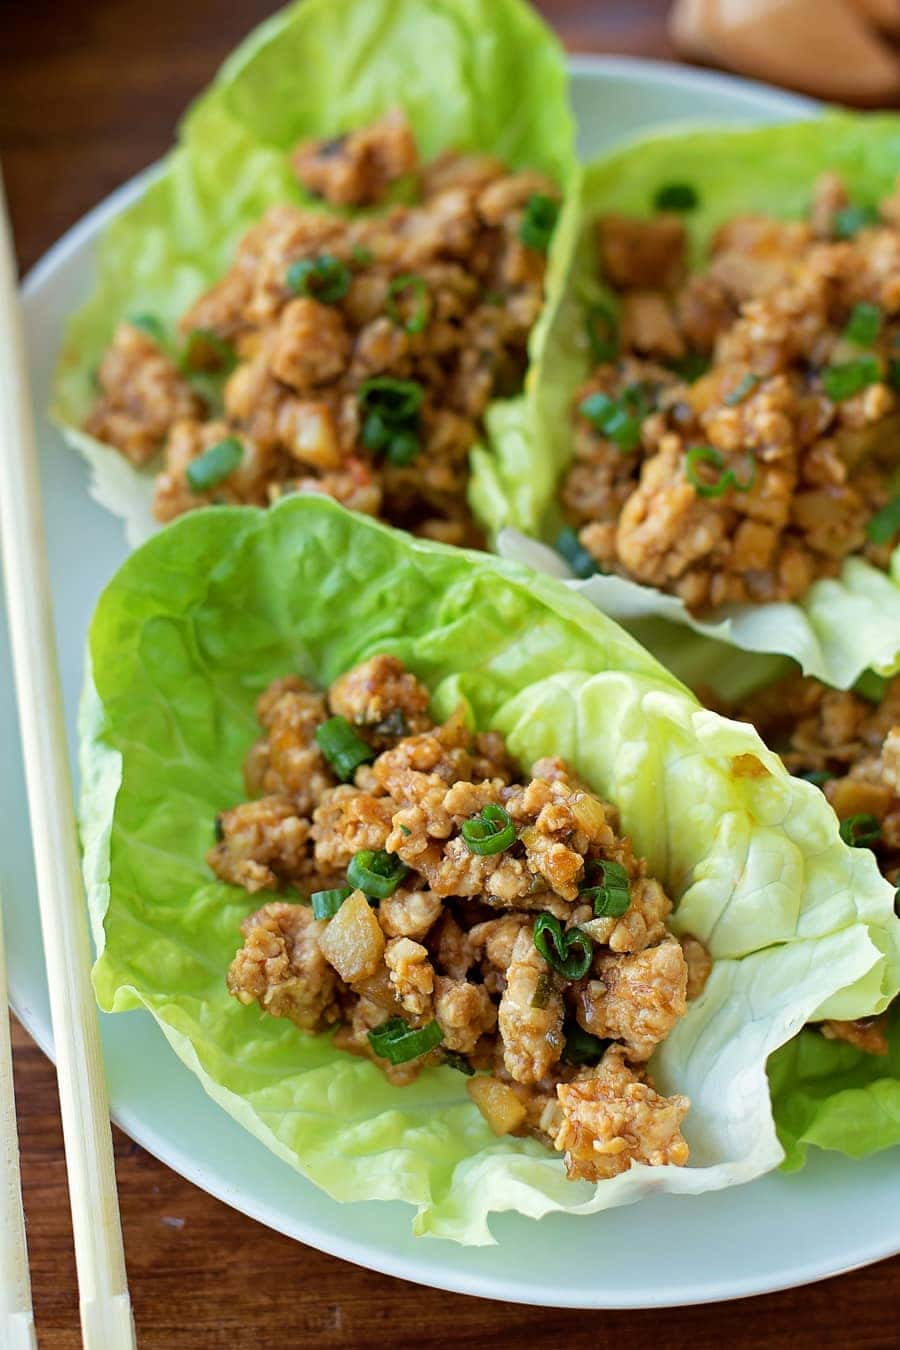 Esta receita do PF Chang's Chicken Lettuce Wraps é um imitador de um restaurante favorito.